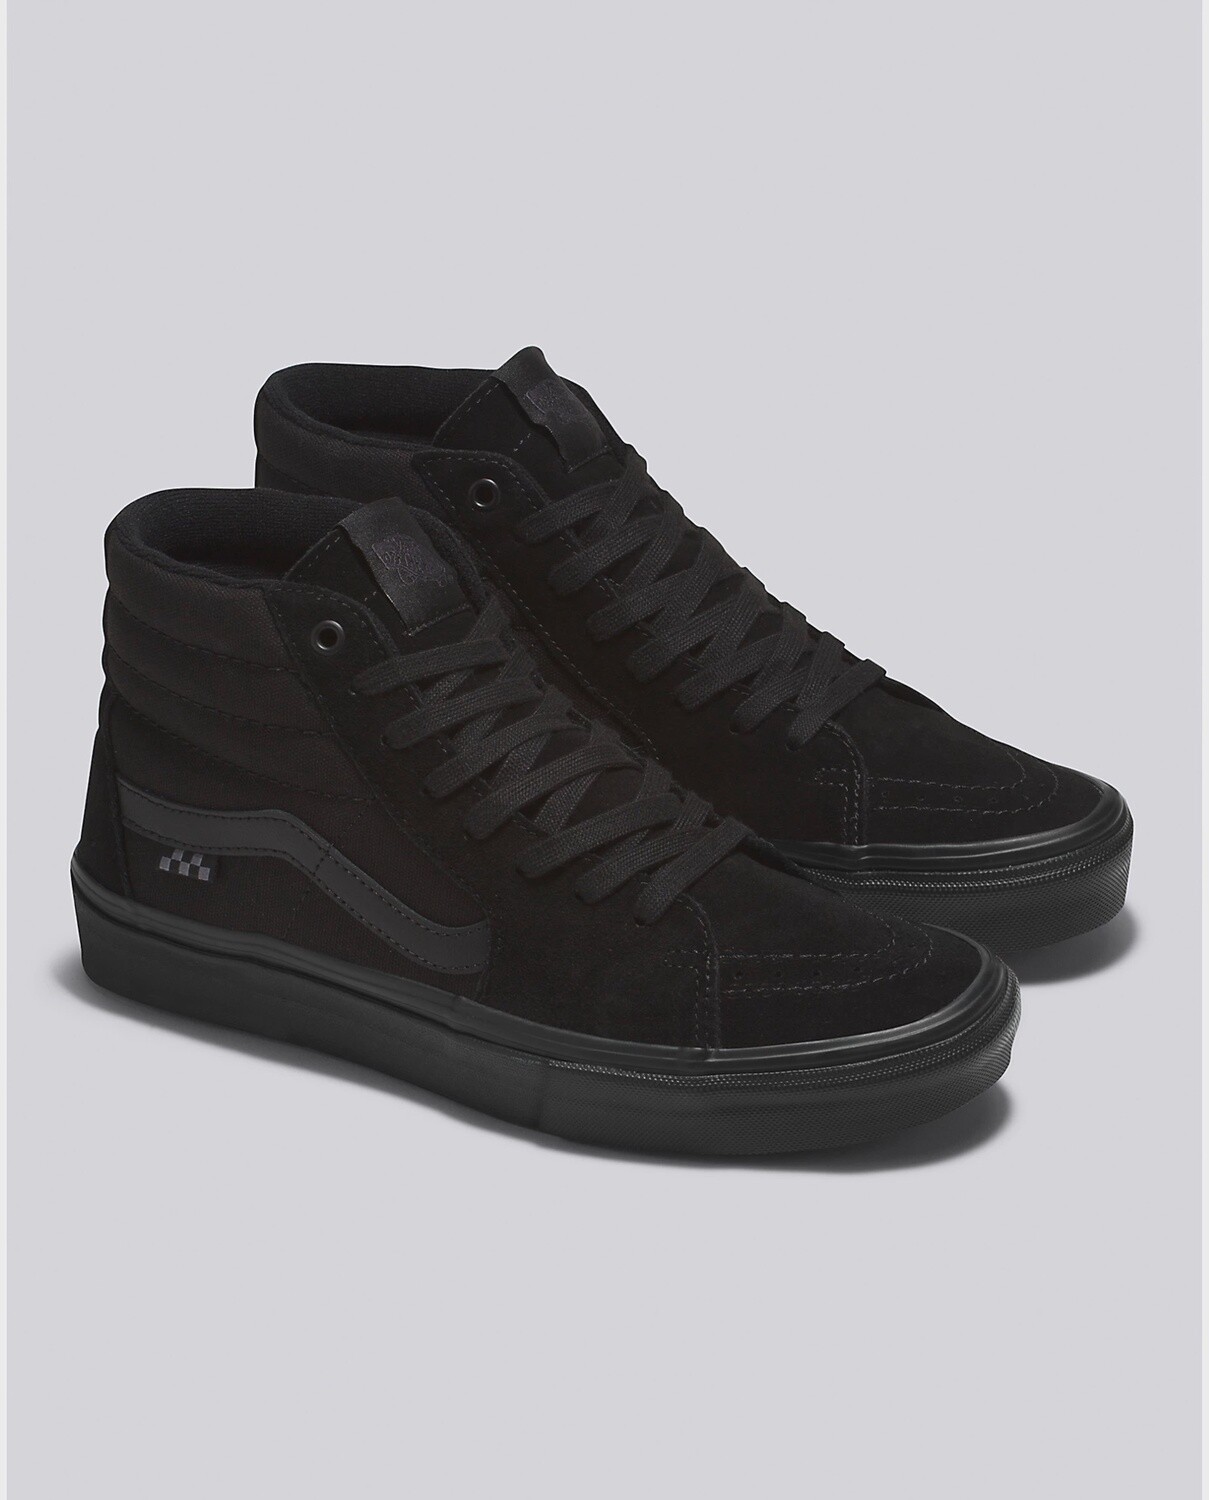 Vans Skate Sk8-Hi Black / Black Shoes